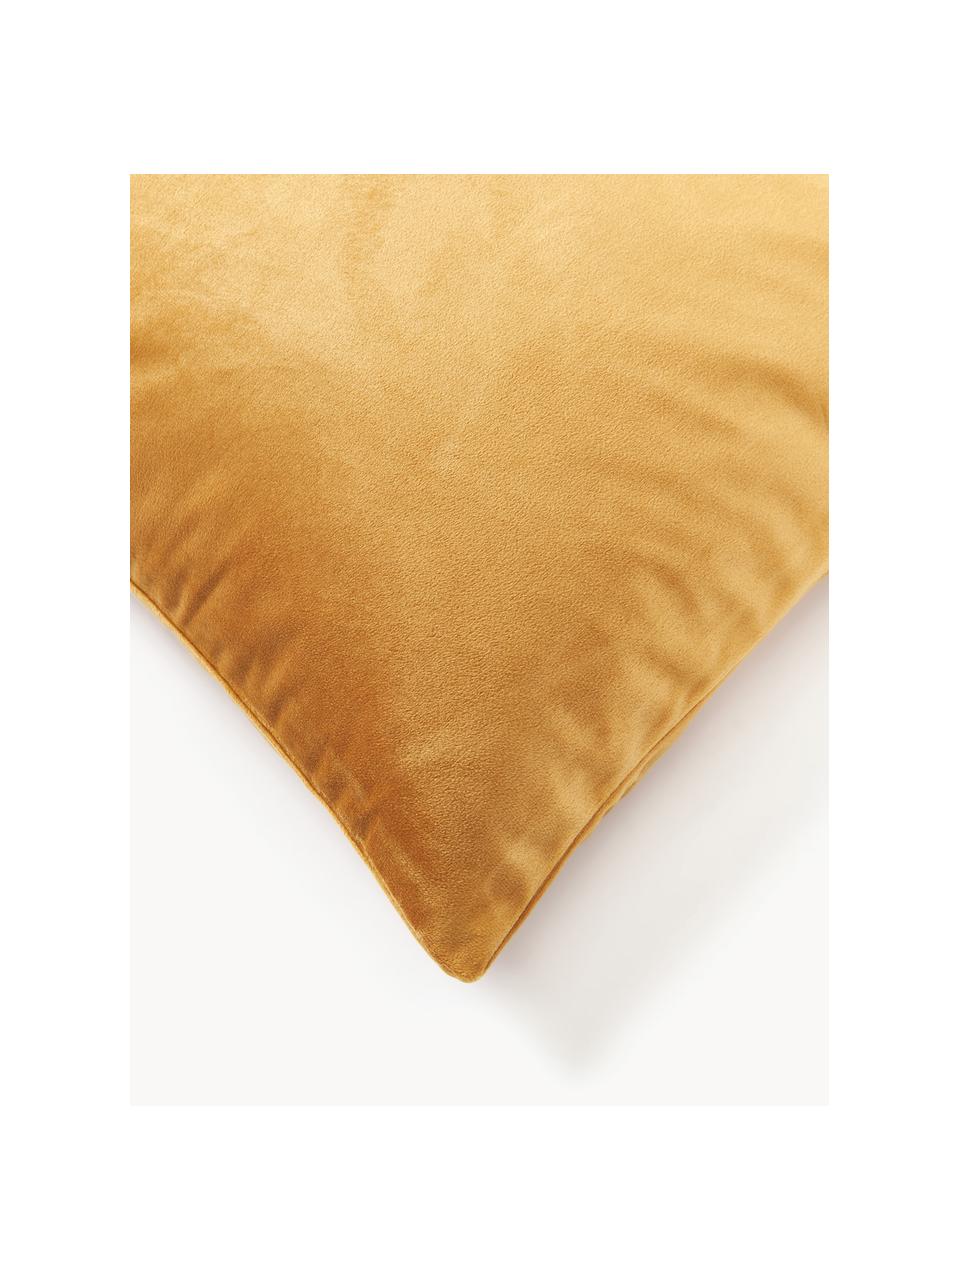 Poszewka na poduszkę z aksamitu z haftem Giro, 100% aksamit poliestrowy, Ochrowy, odcienie złotego, S 45 x D 45 cm